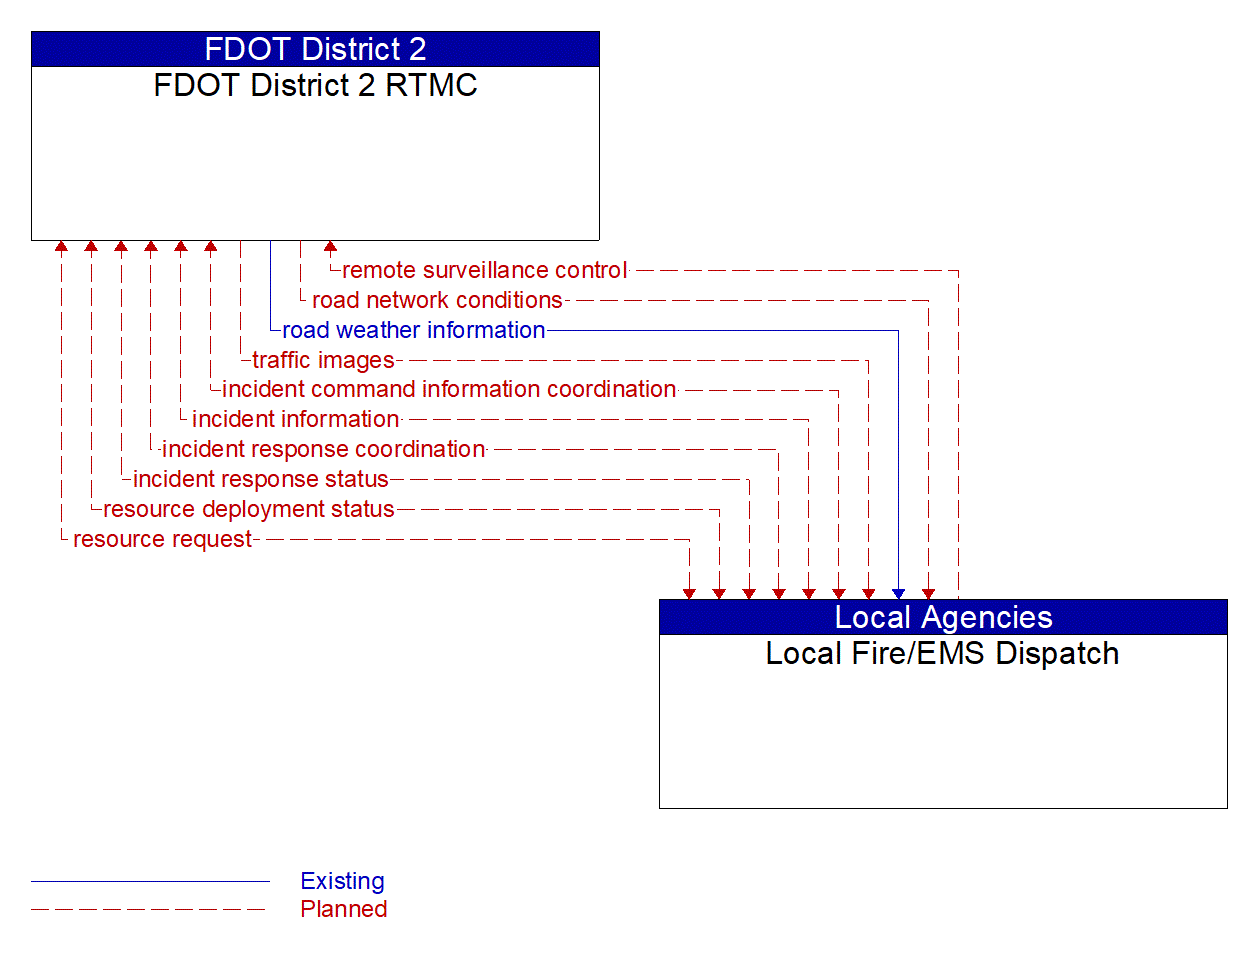 Architecture Flow Diagram: Local Fire/EMS Dispatch <--> FDOT District 2 RTMC